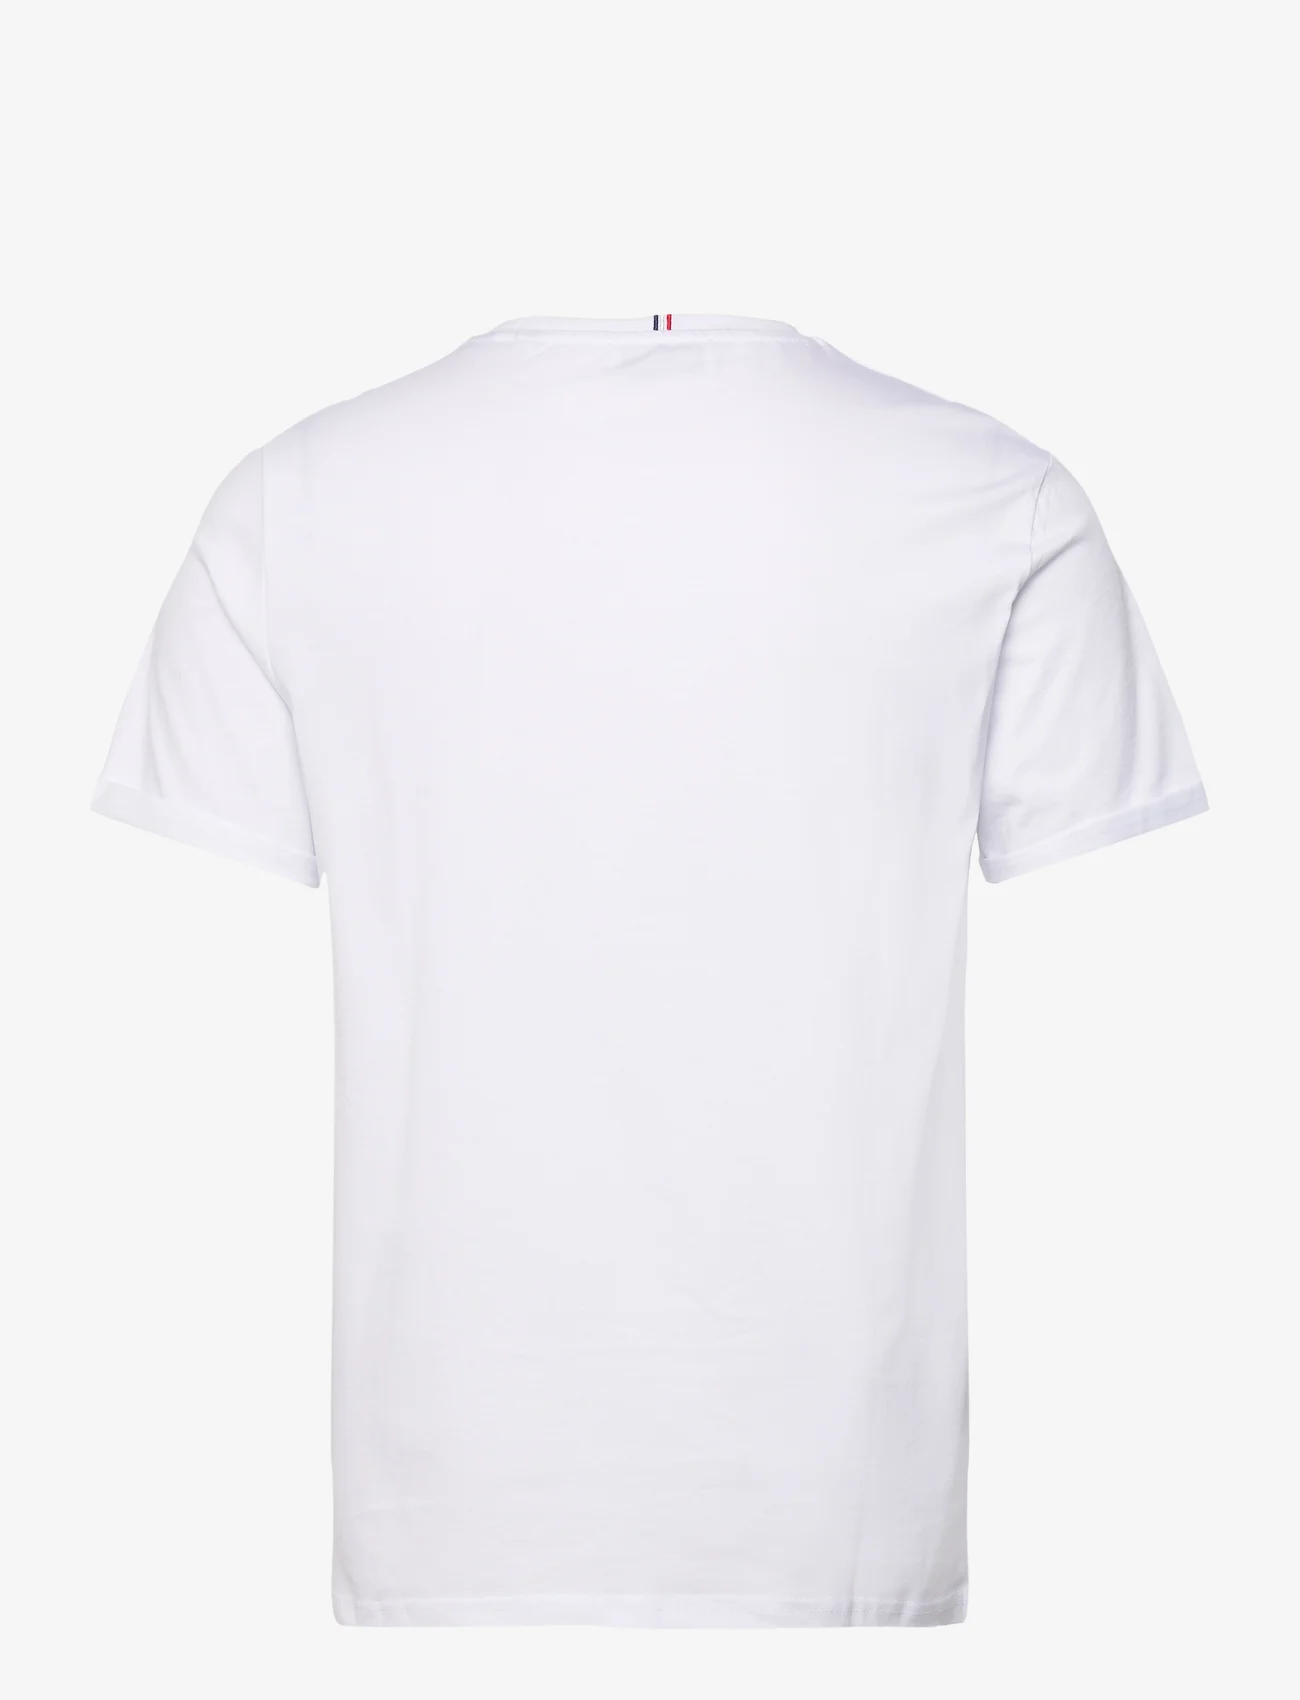 Les Deux - Les Deux II T-Shirt 2.0 - kurzärmelige - white/dark copper - 1